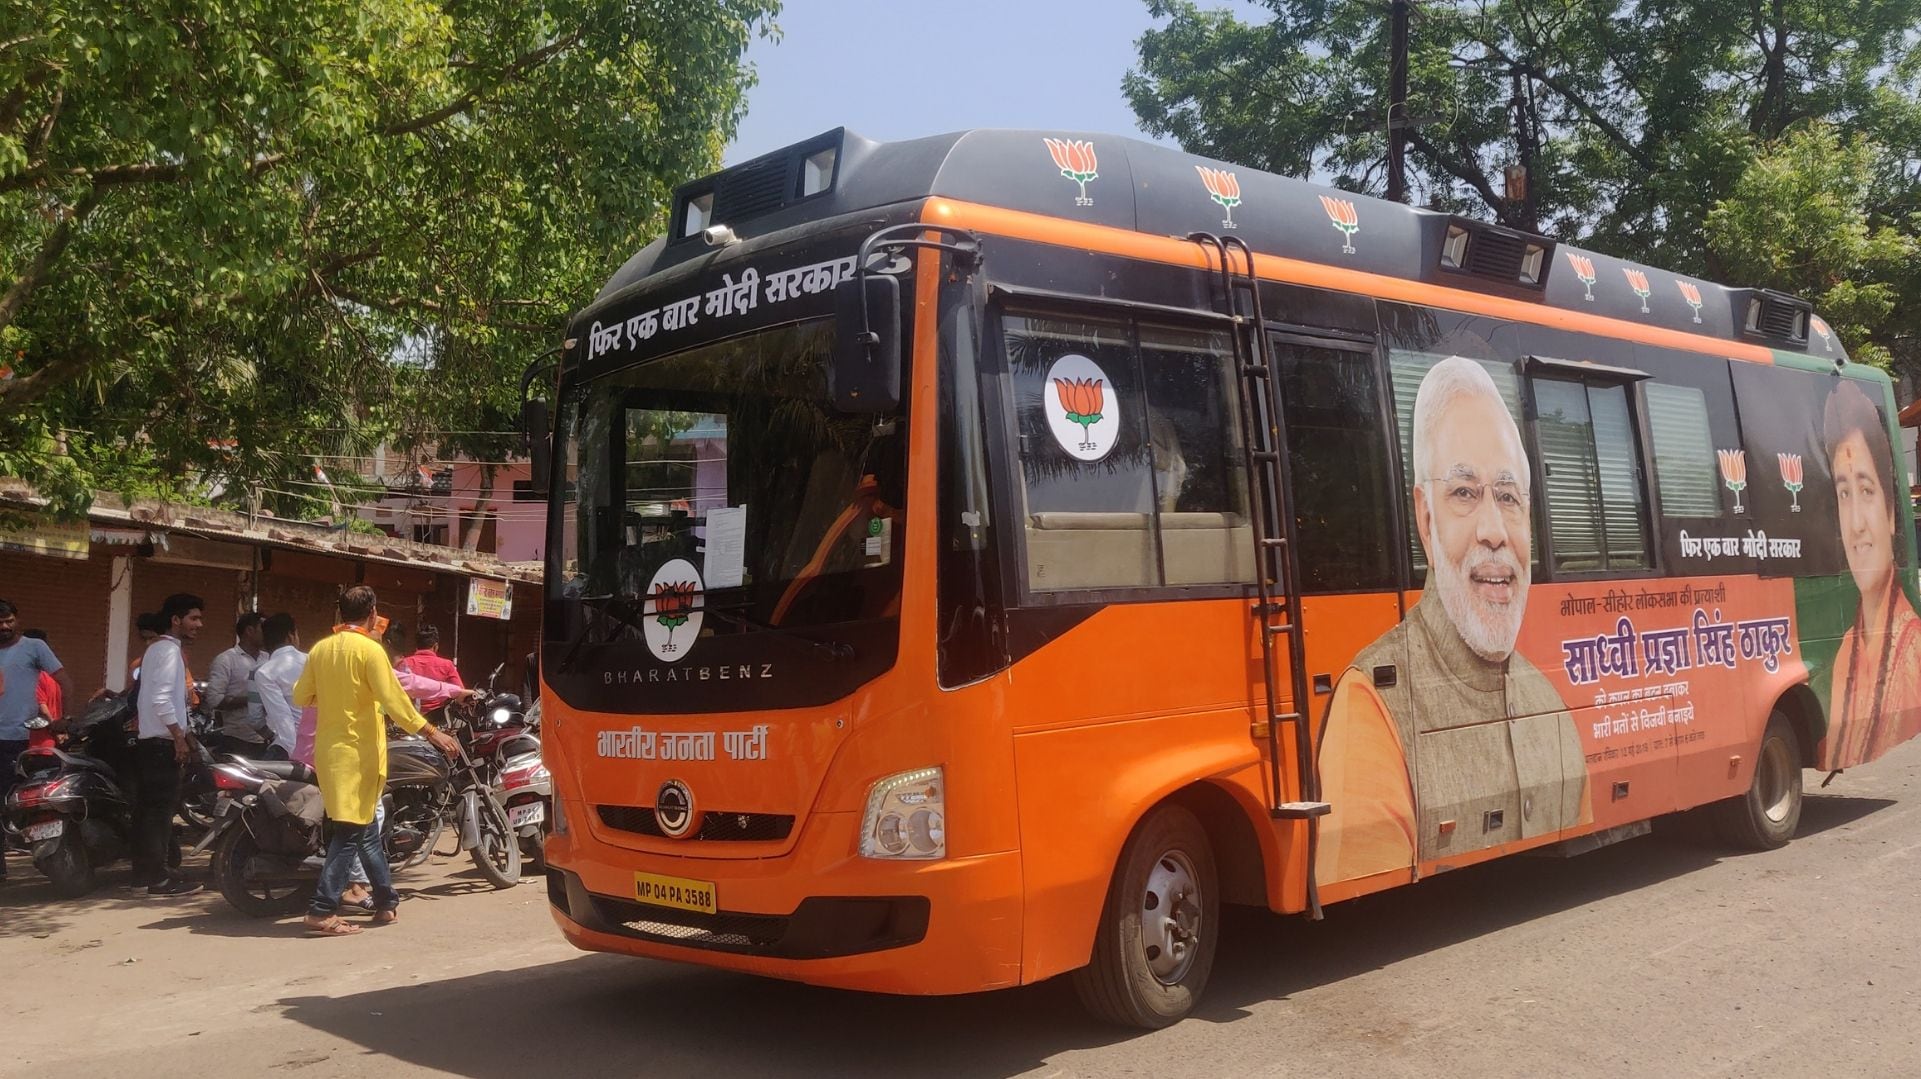 0.2. Pragya Singh_s campaign vehicle